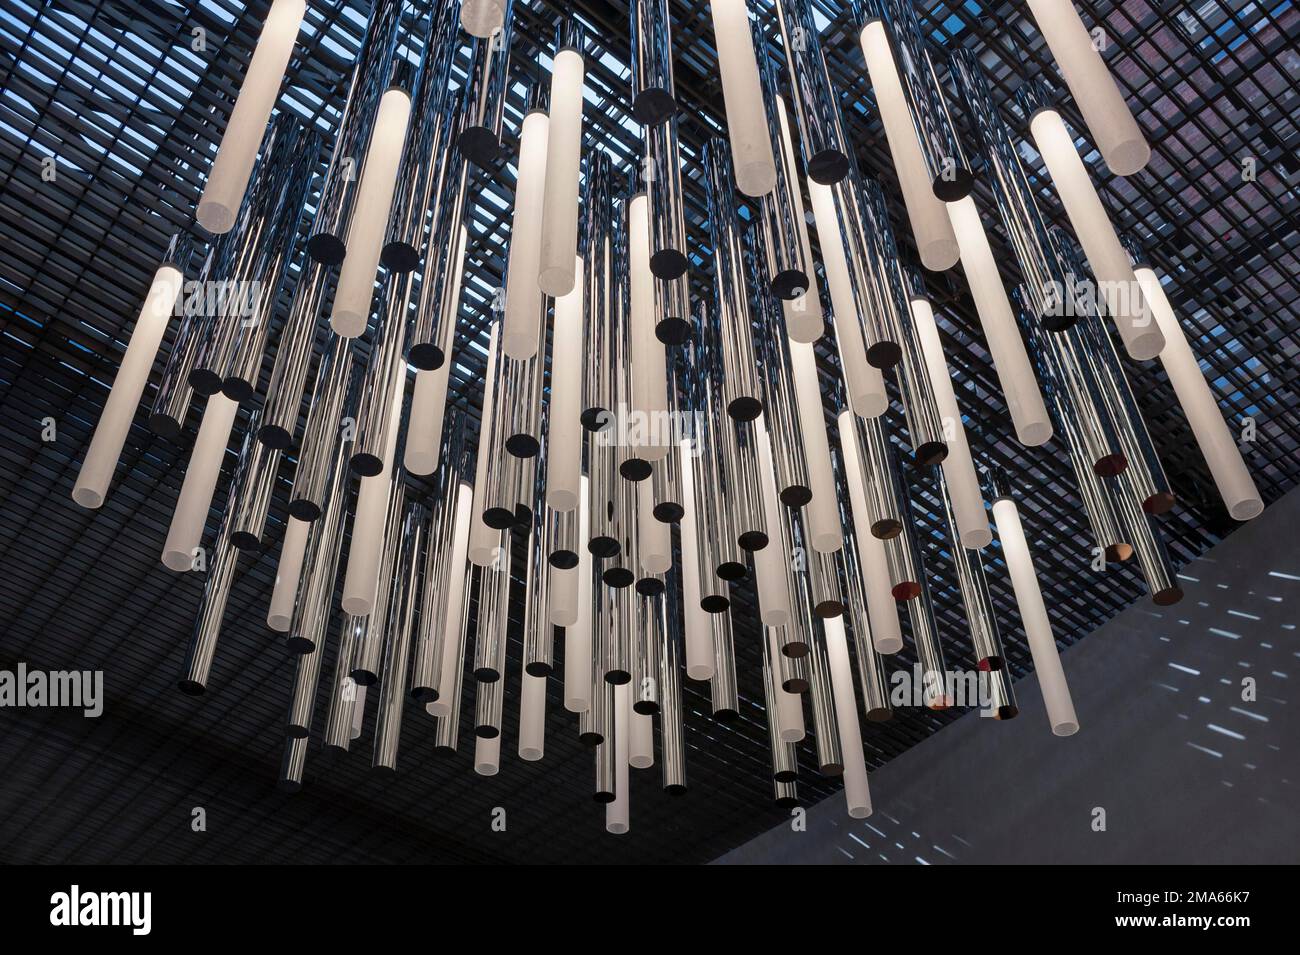 Stabförmige Deckenleuchten, Hallbeleuchtung, Stahl und Glas, moderne Lichtquelle, München, Bayern, Deutschland Stockfoto